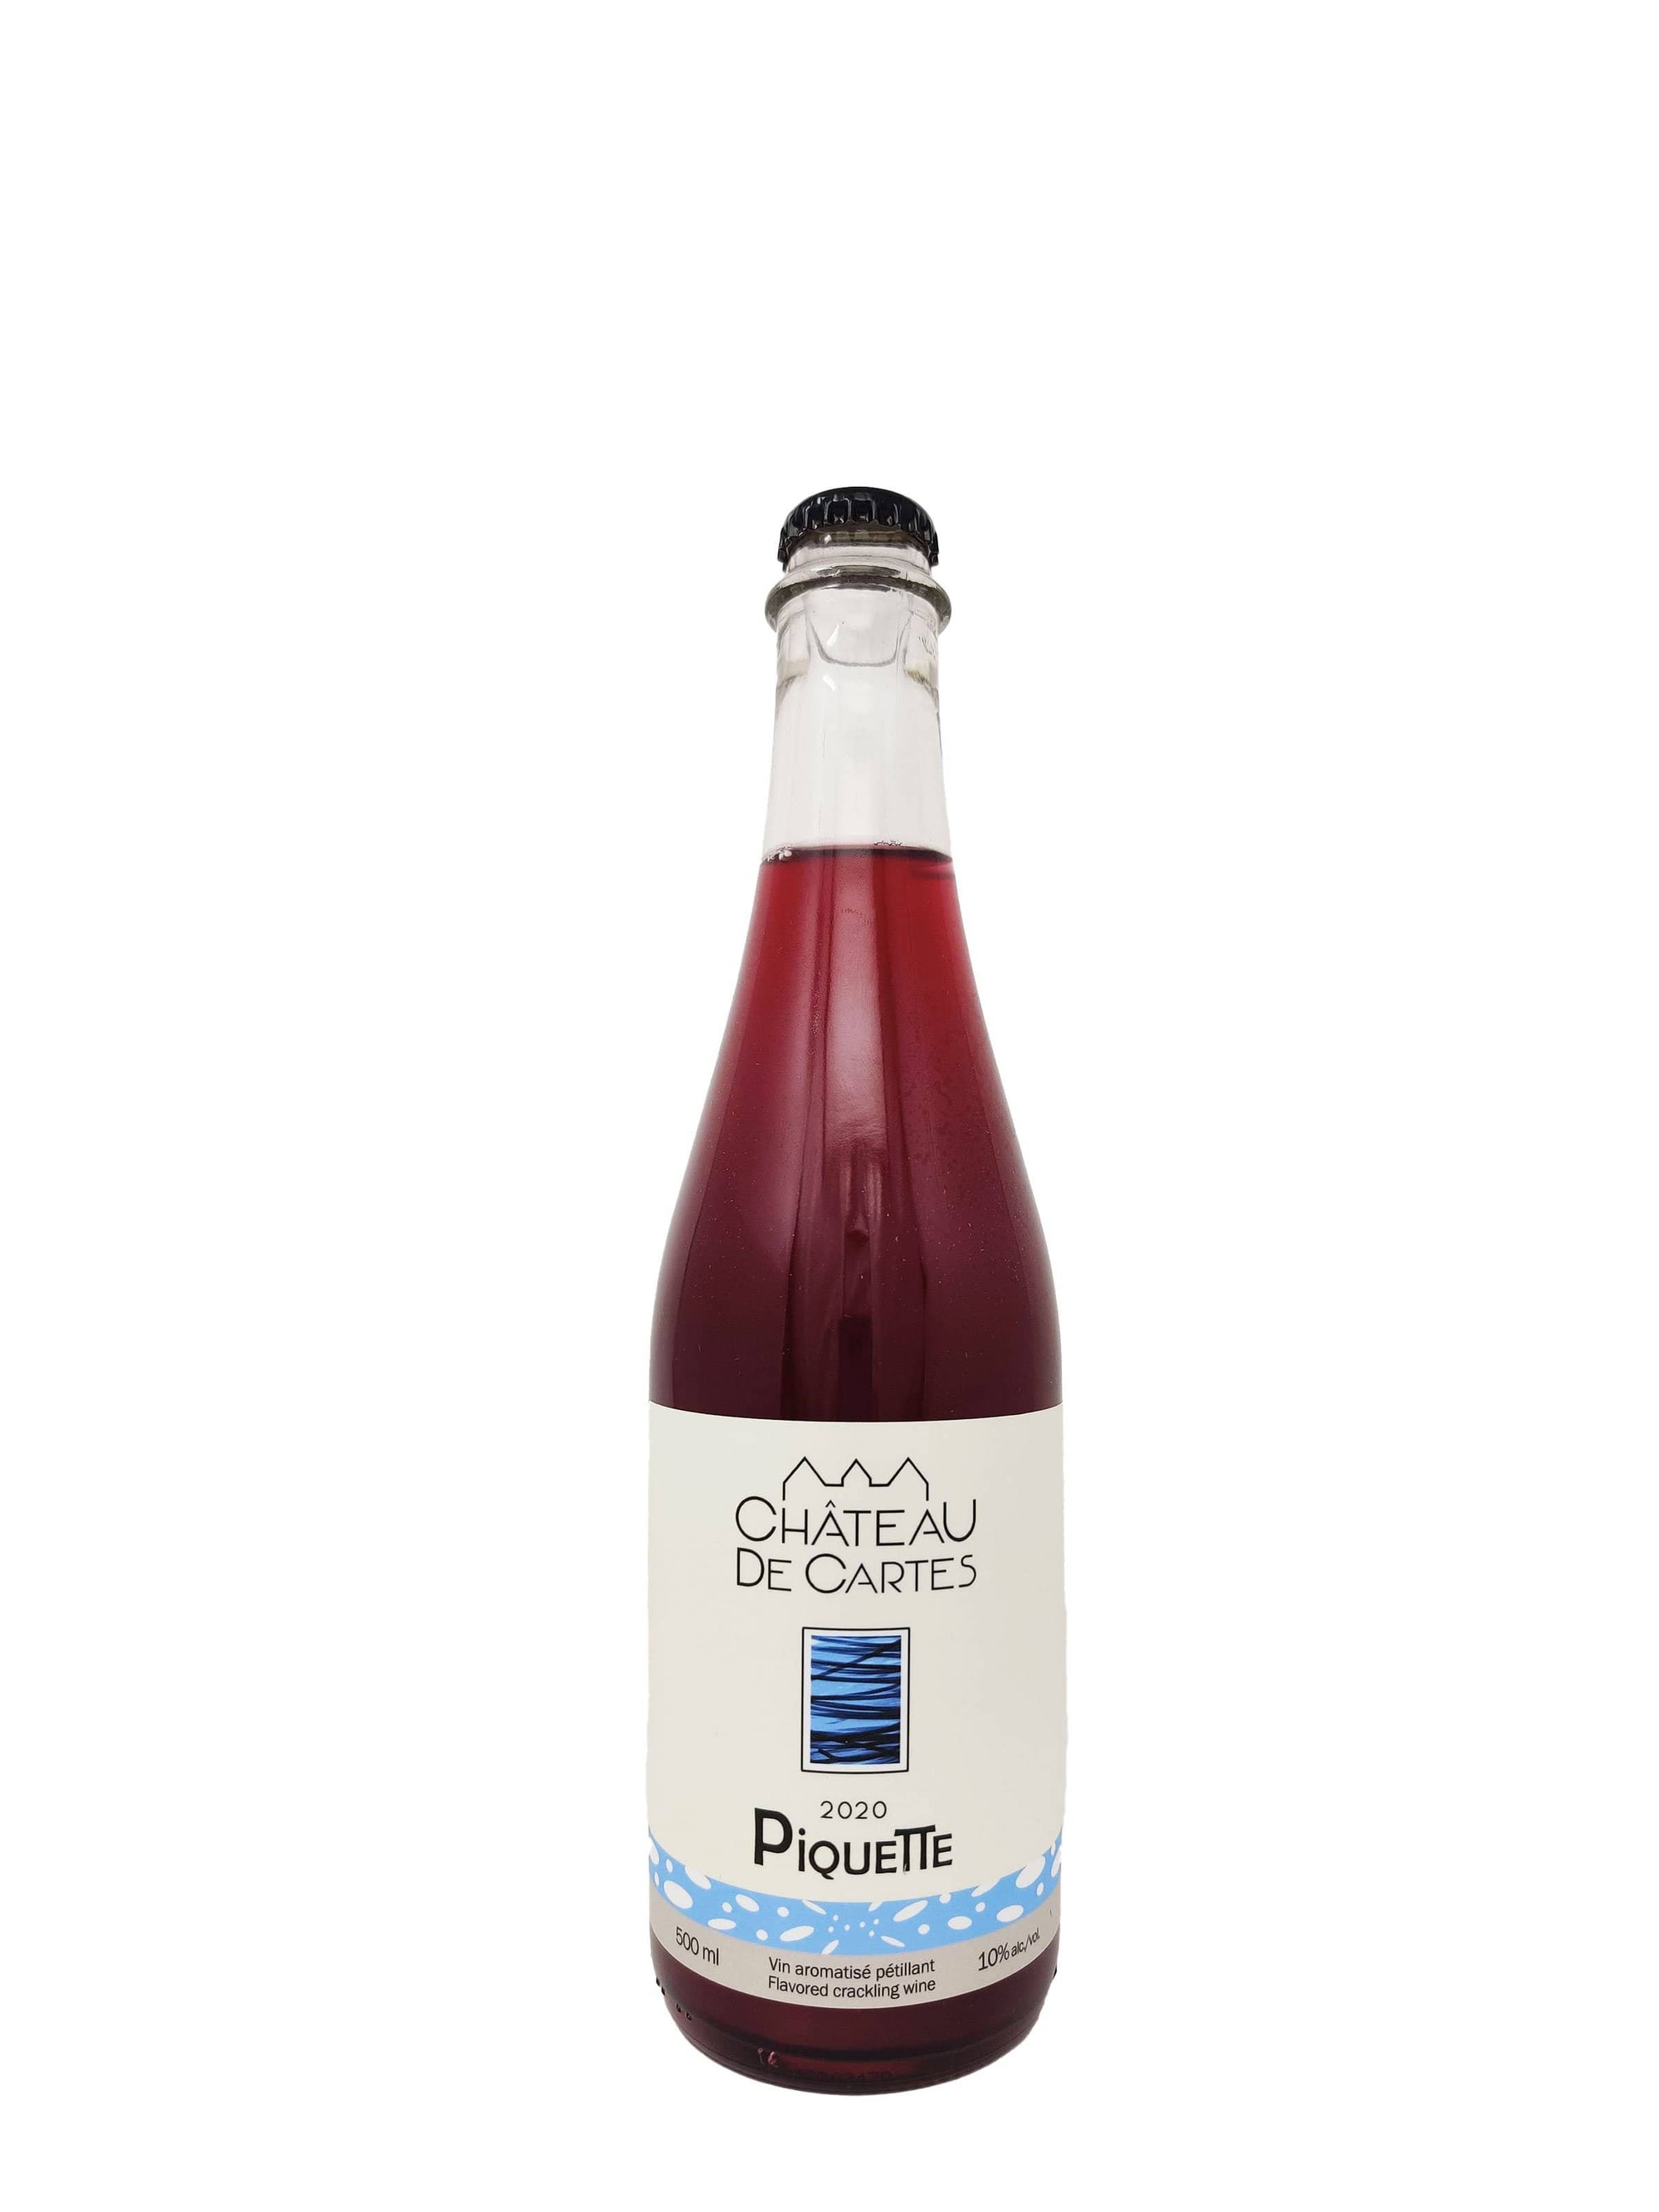 Vignoble Château de Cartes vin Piquette 2020 - Vin Aromatisé Pétillant du Vignoble Château de Cartes